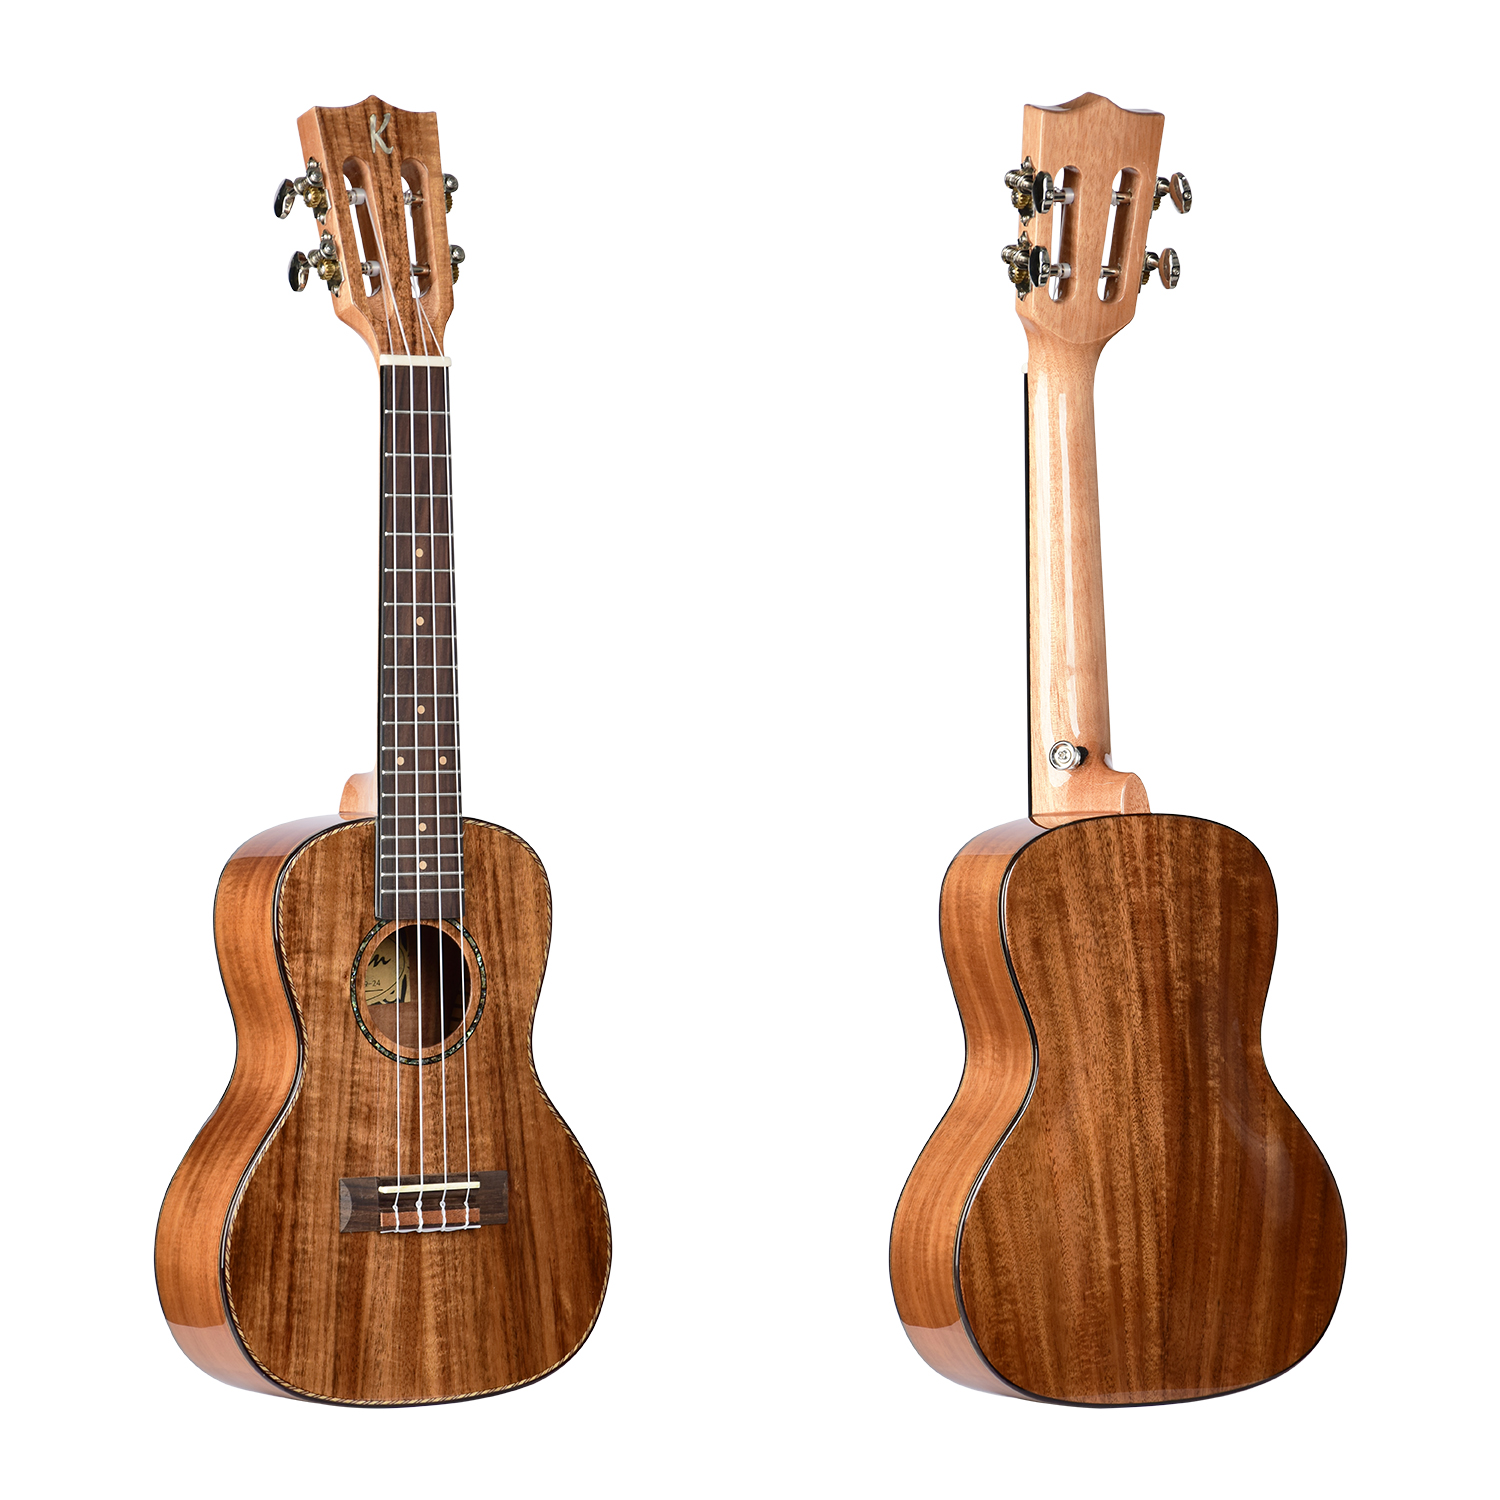 יוקולילי טנור עץ מלא מוגברת Electic acoustic solid Wood Ukulele tenor Solid Top Koa UK-MA9-26